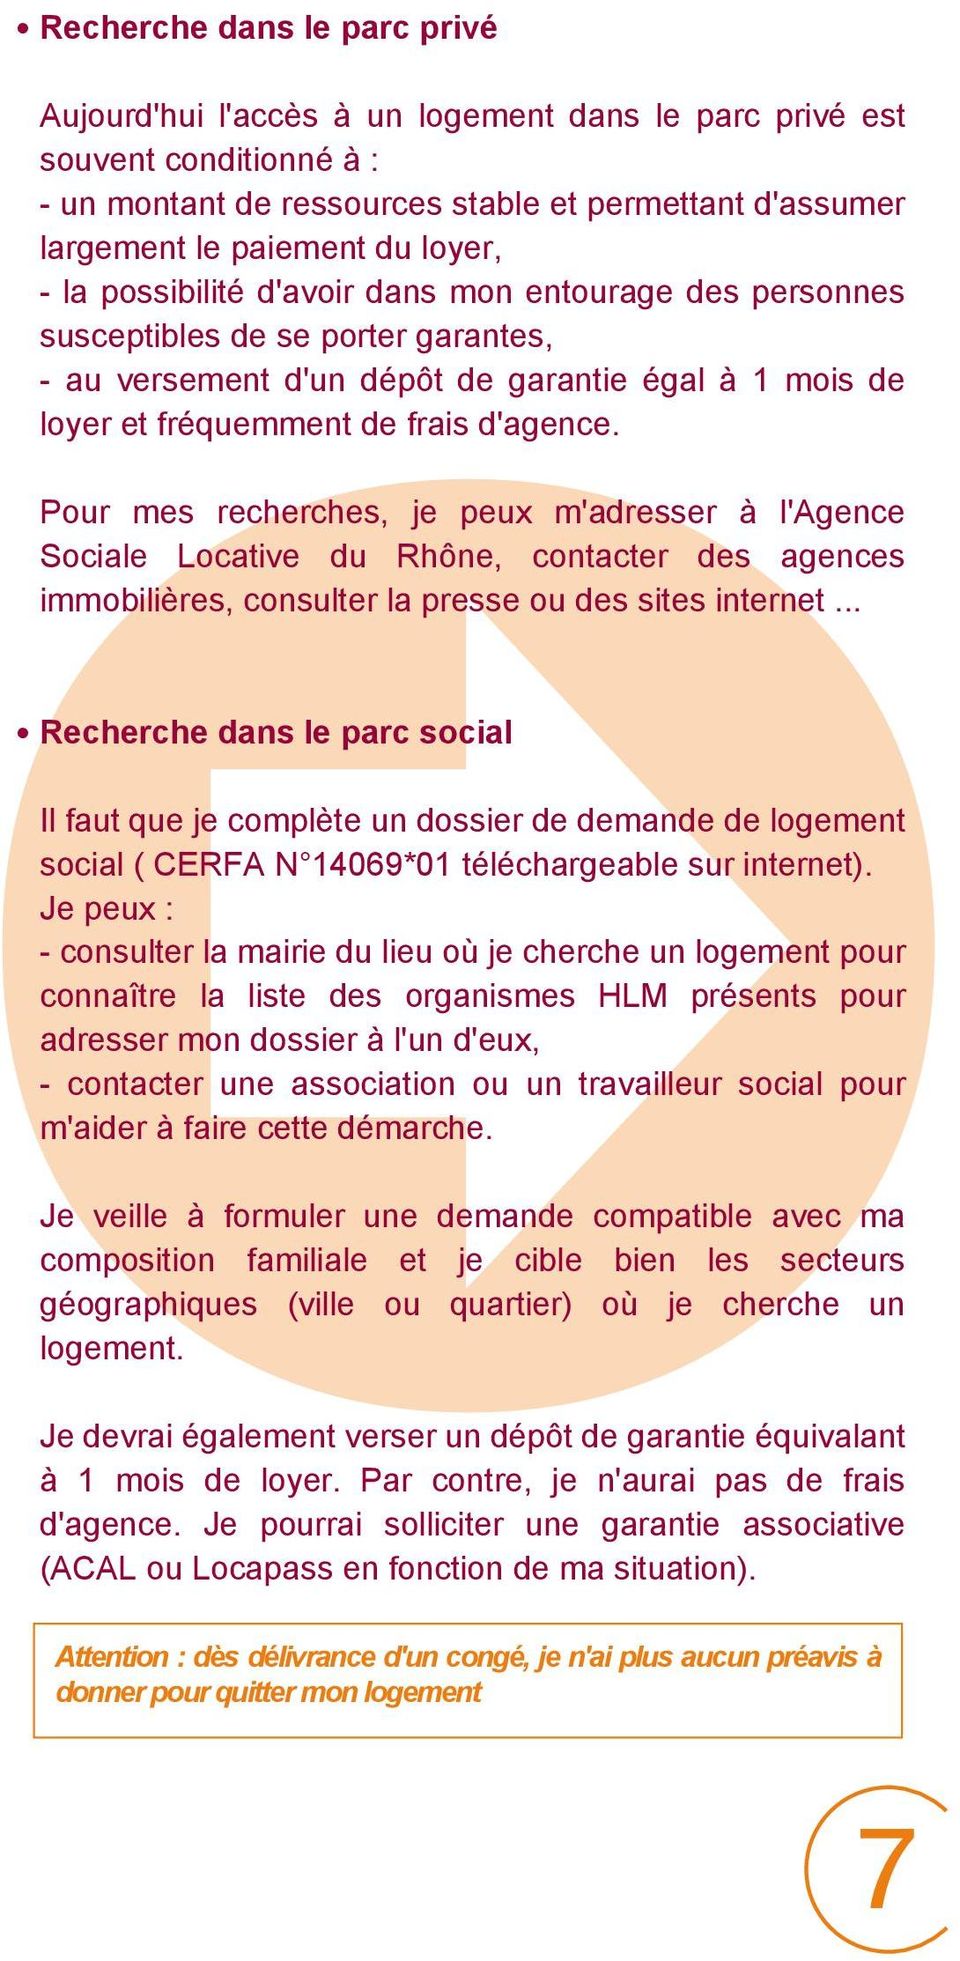 Pour mes recherches, je peux m'adresser à l'agence Sociale Locative du Rhône, contacter des agences immobilières, consulter la presse ou des sites internet.